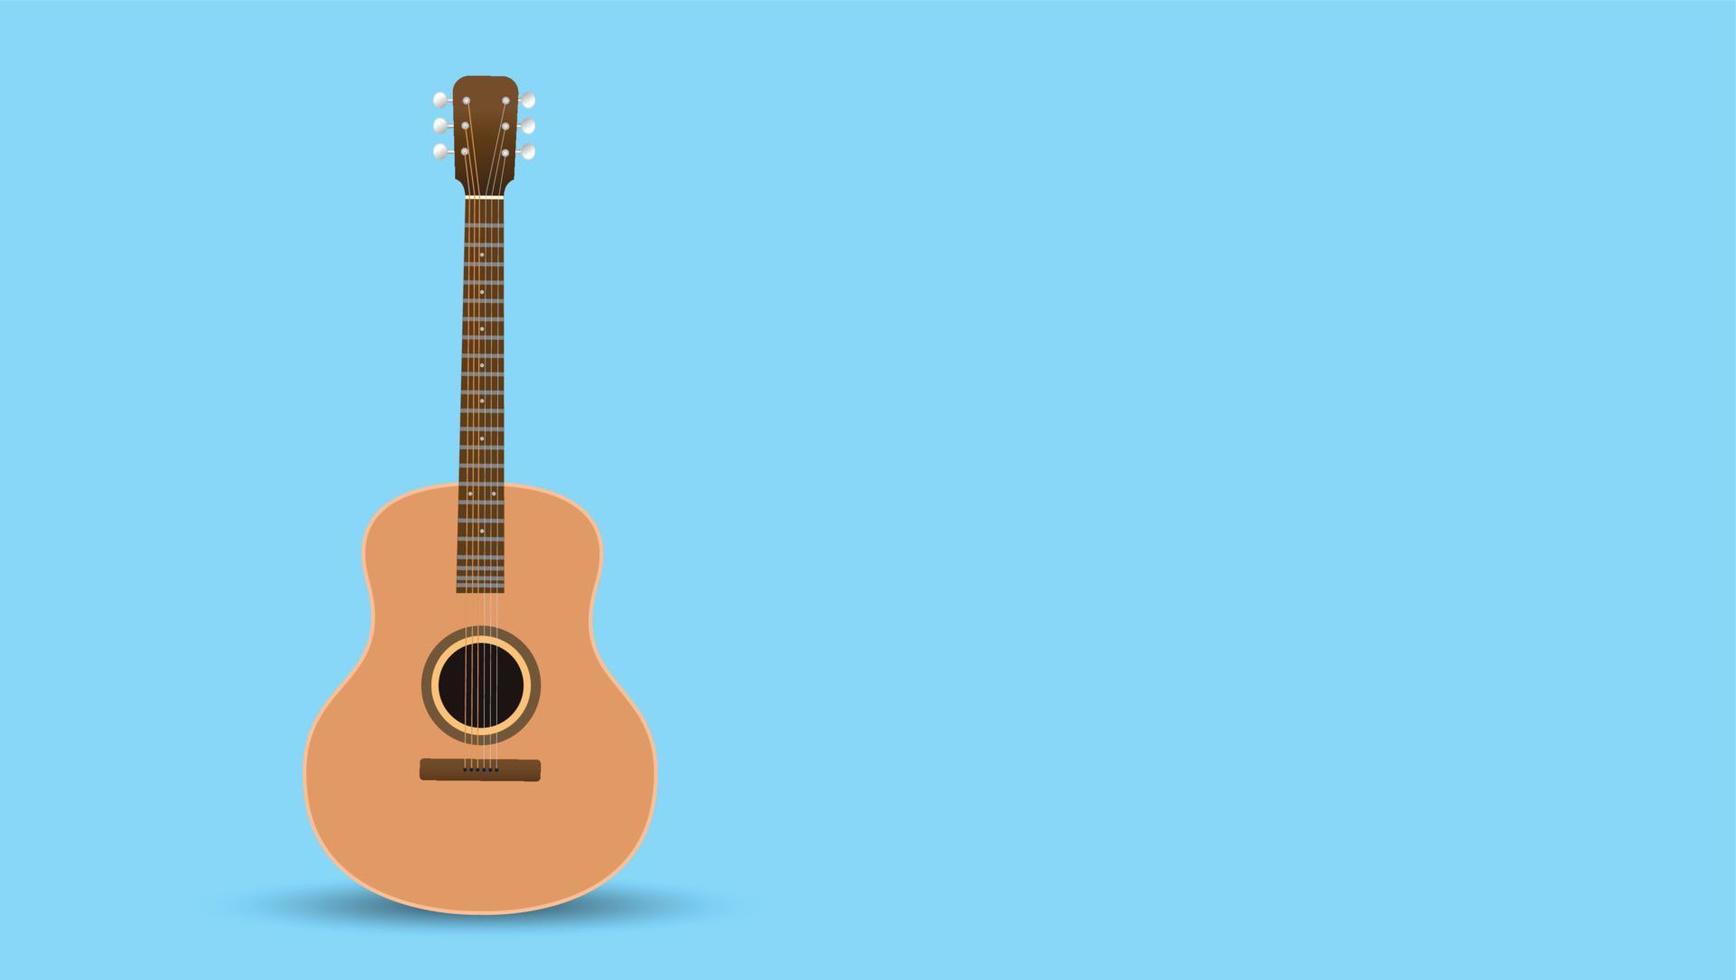 guitarra acústica, aislada en el fondo, utilizada para tocar música y notas, ilustración vectorial. vector